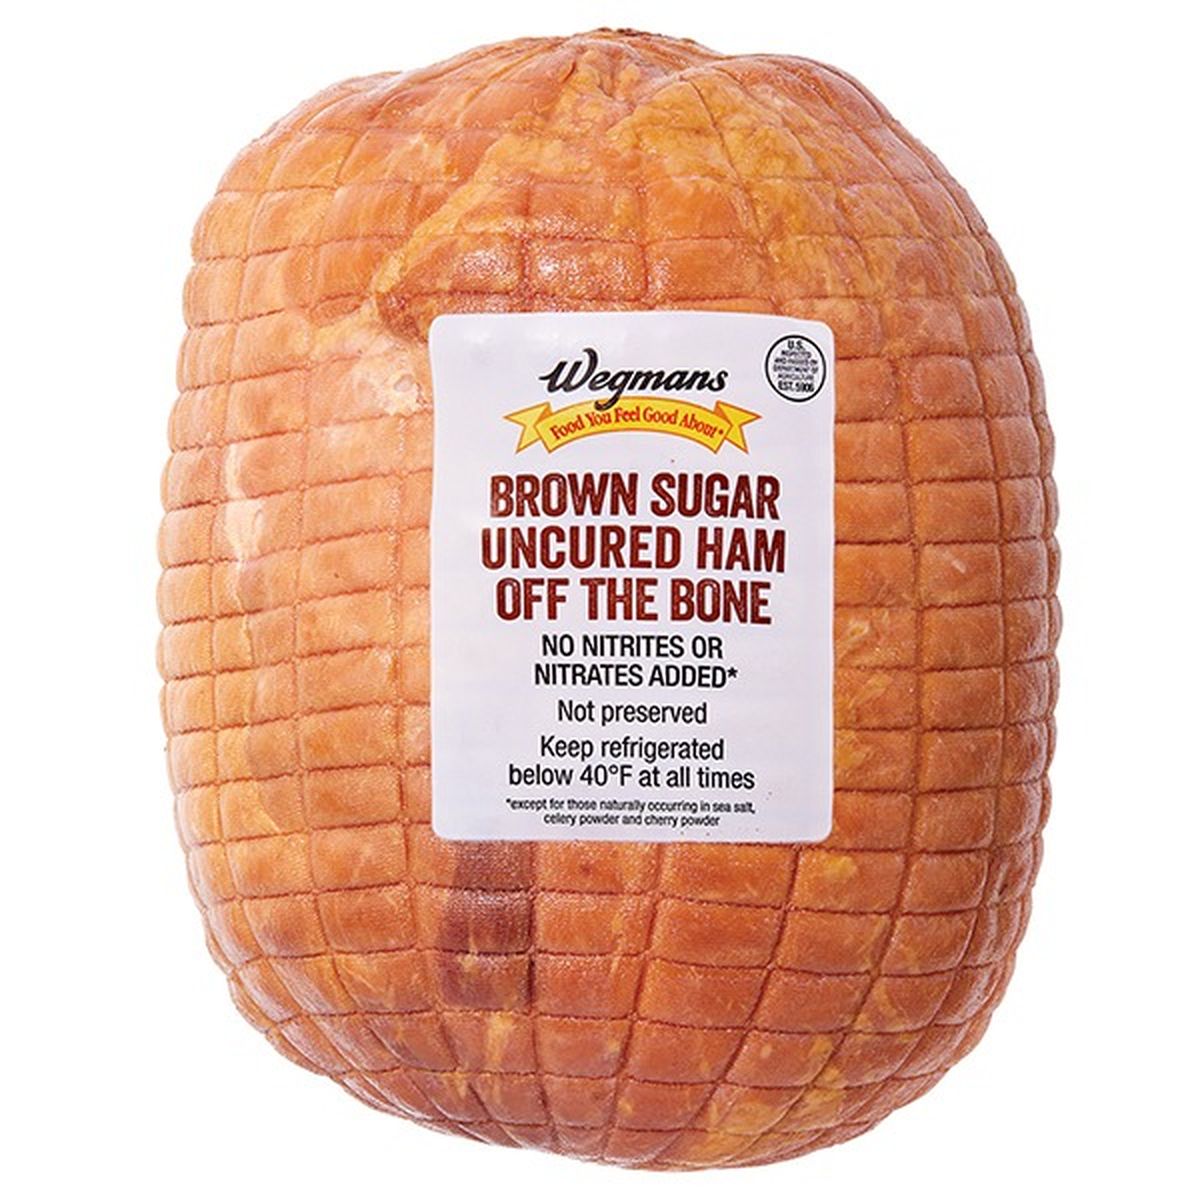 Calories in Wegmans Uncured Brown Sugar Ham